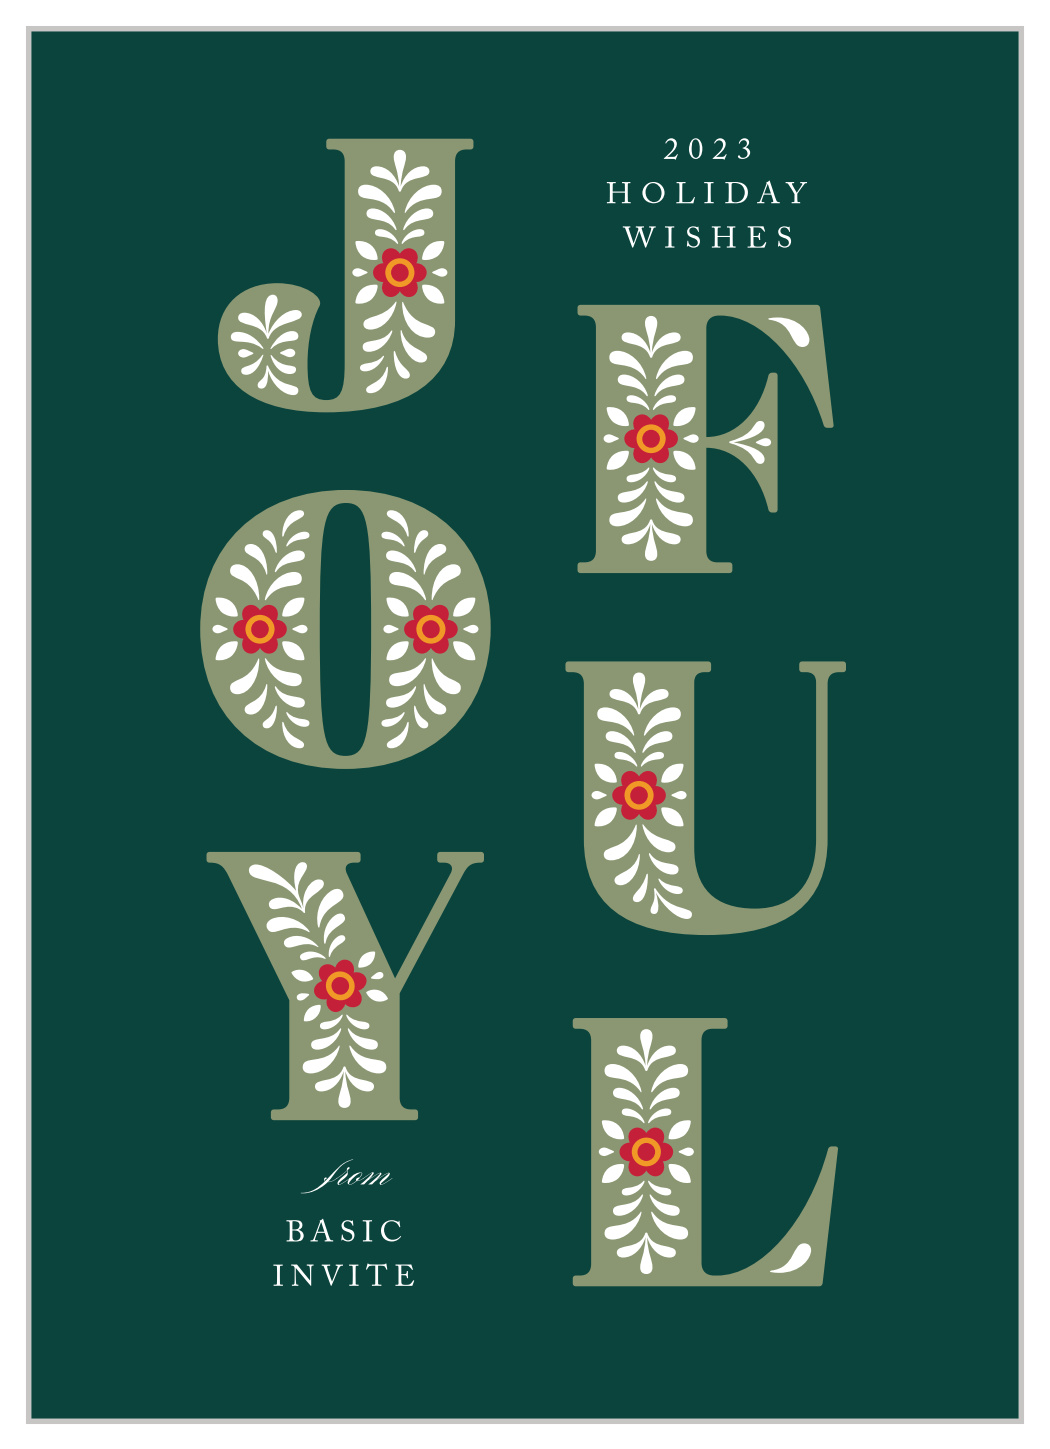 Joyful Wishes Corporate Holiday Cards